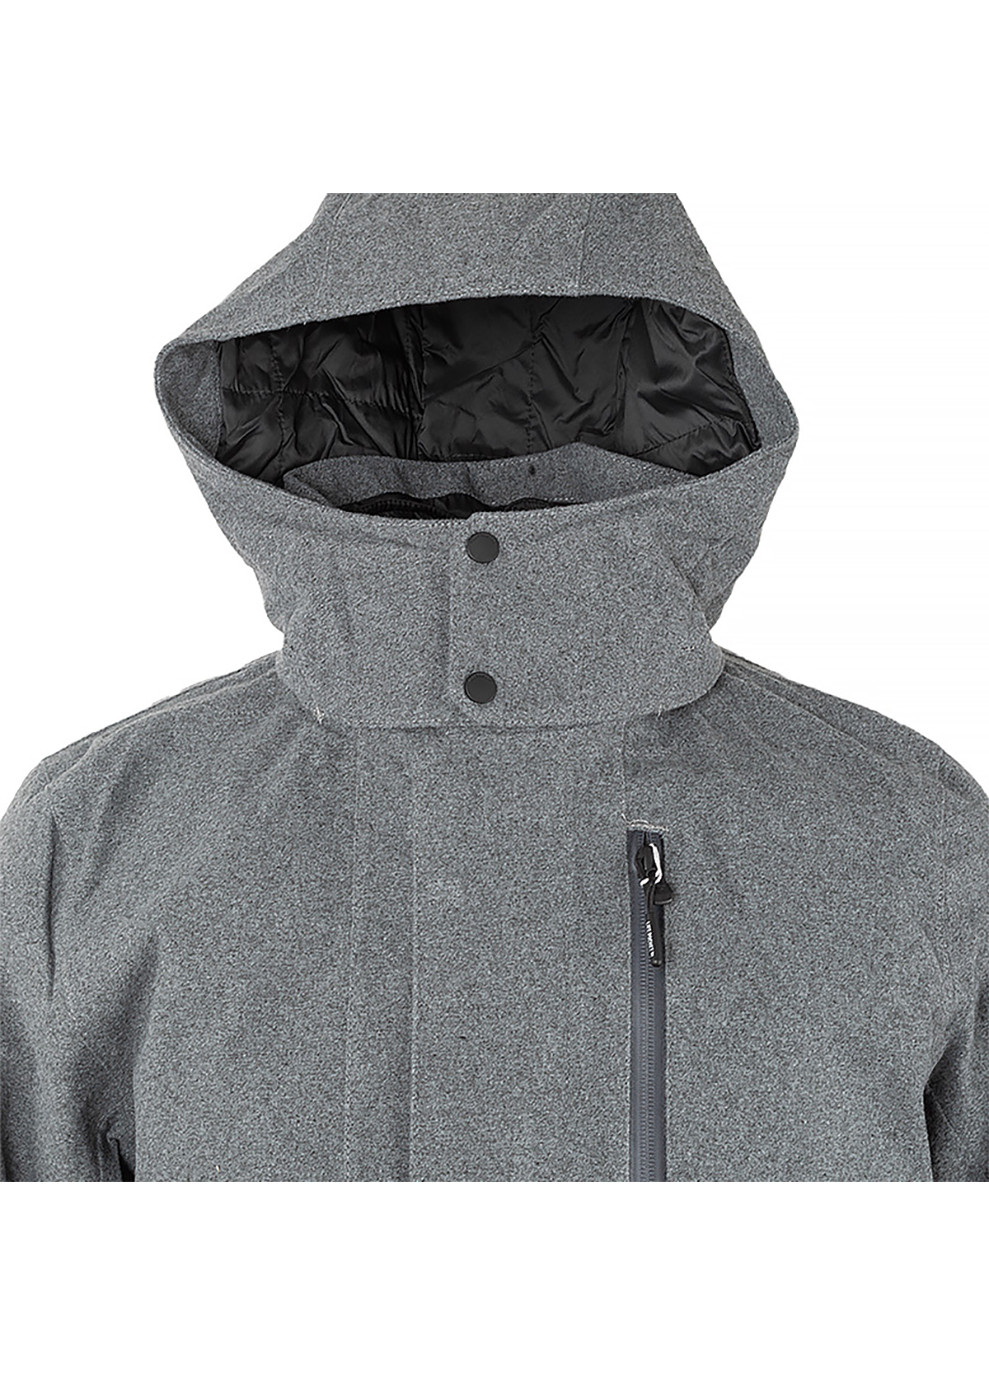 Серая демисезонная мужская куртка urb lab helsinki 3-in-1 coat серый m (53850-964 m) Helly Hansen